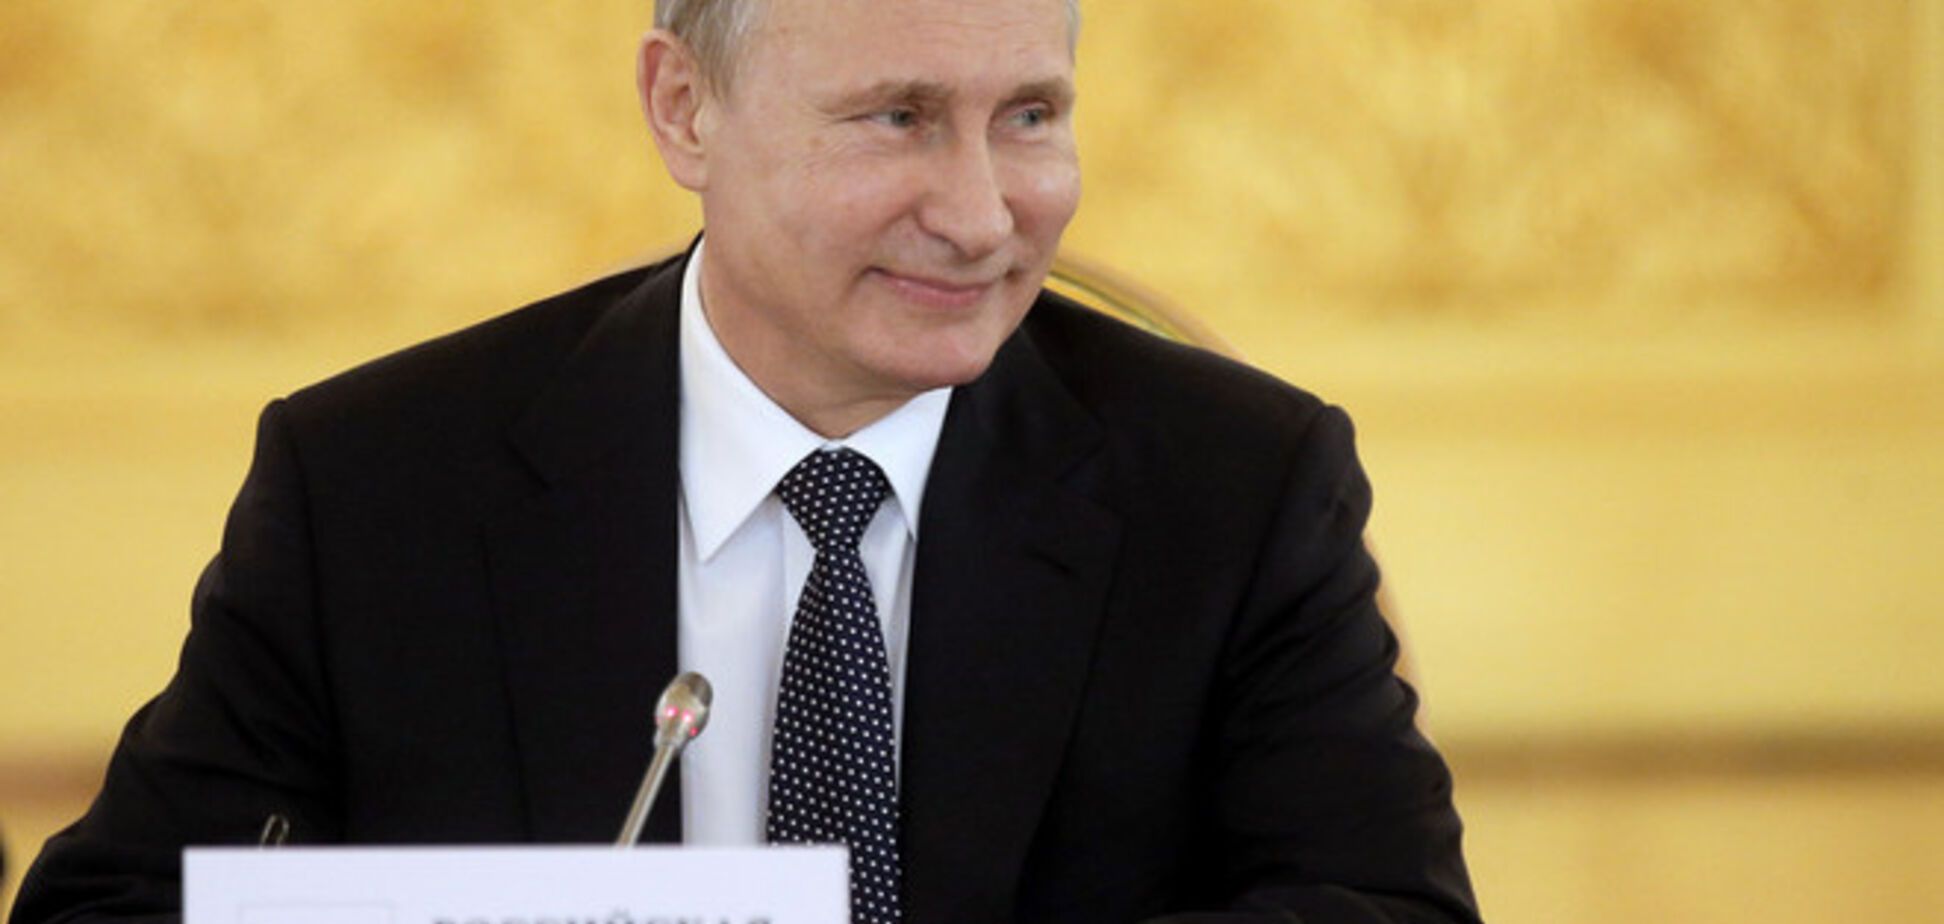 Bild: олигархи могут свергнуть Путина уже в 2015 году